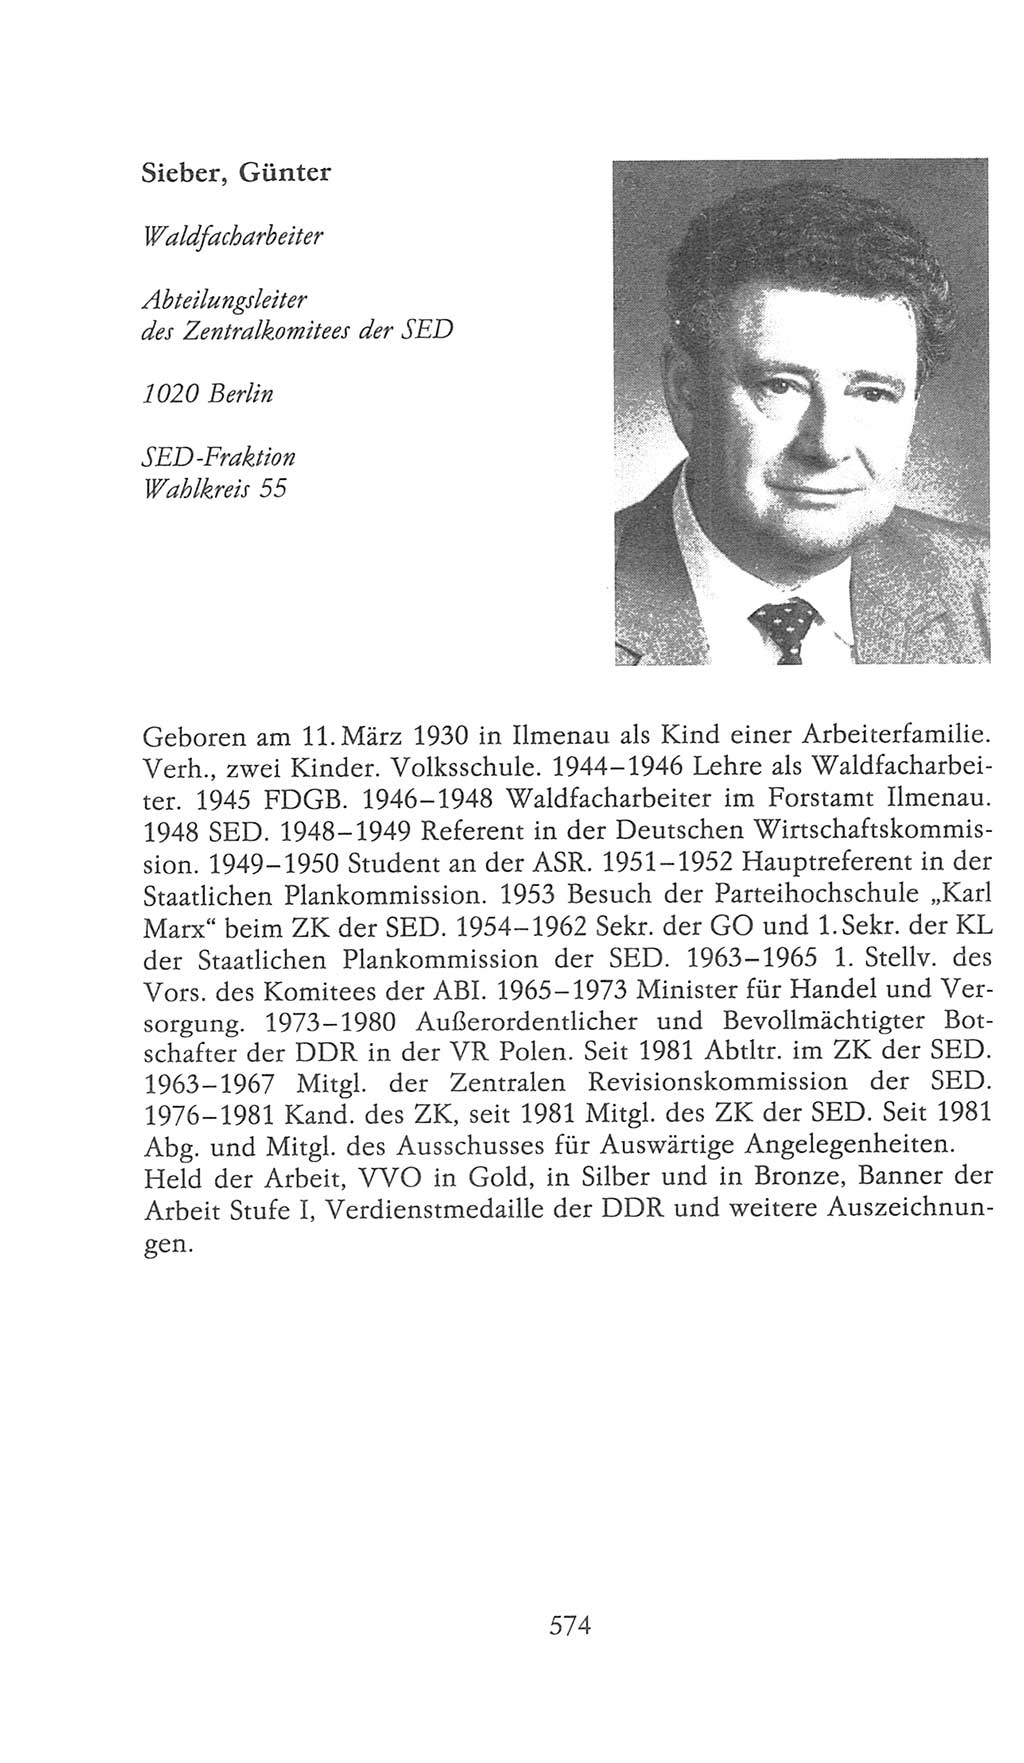 Volkskammer (VK) der Deutschen Demokratischen Republik (DDR), 9. Wahlperiode 1986-1990, Seite 574 (VK. DDR 9. WP. 1986-1990, S. 574)